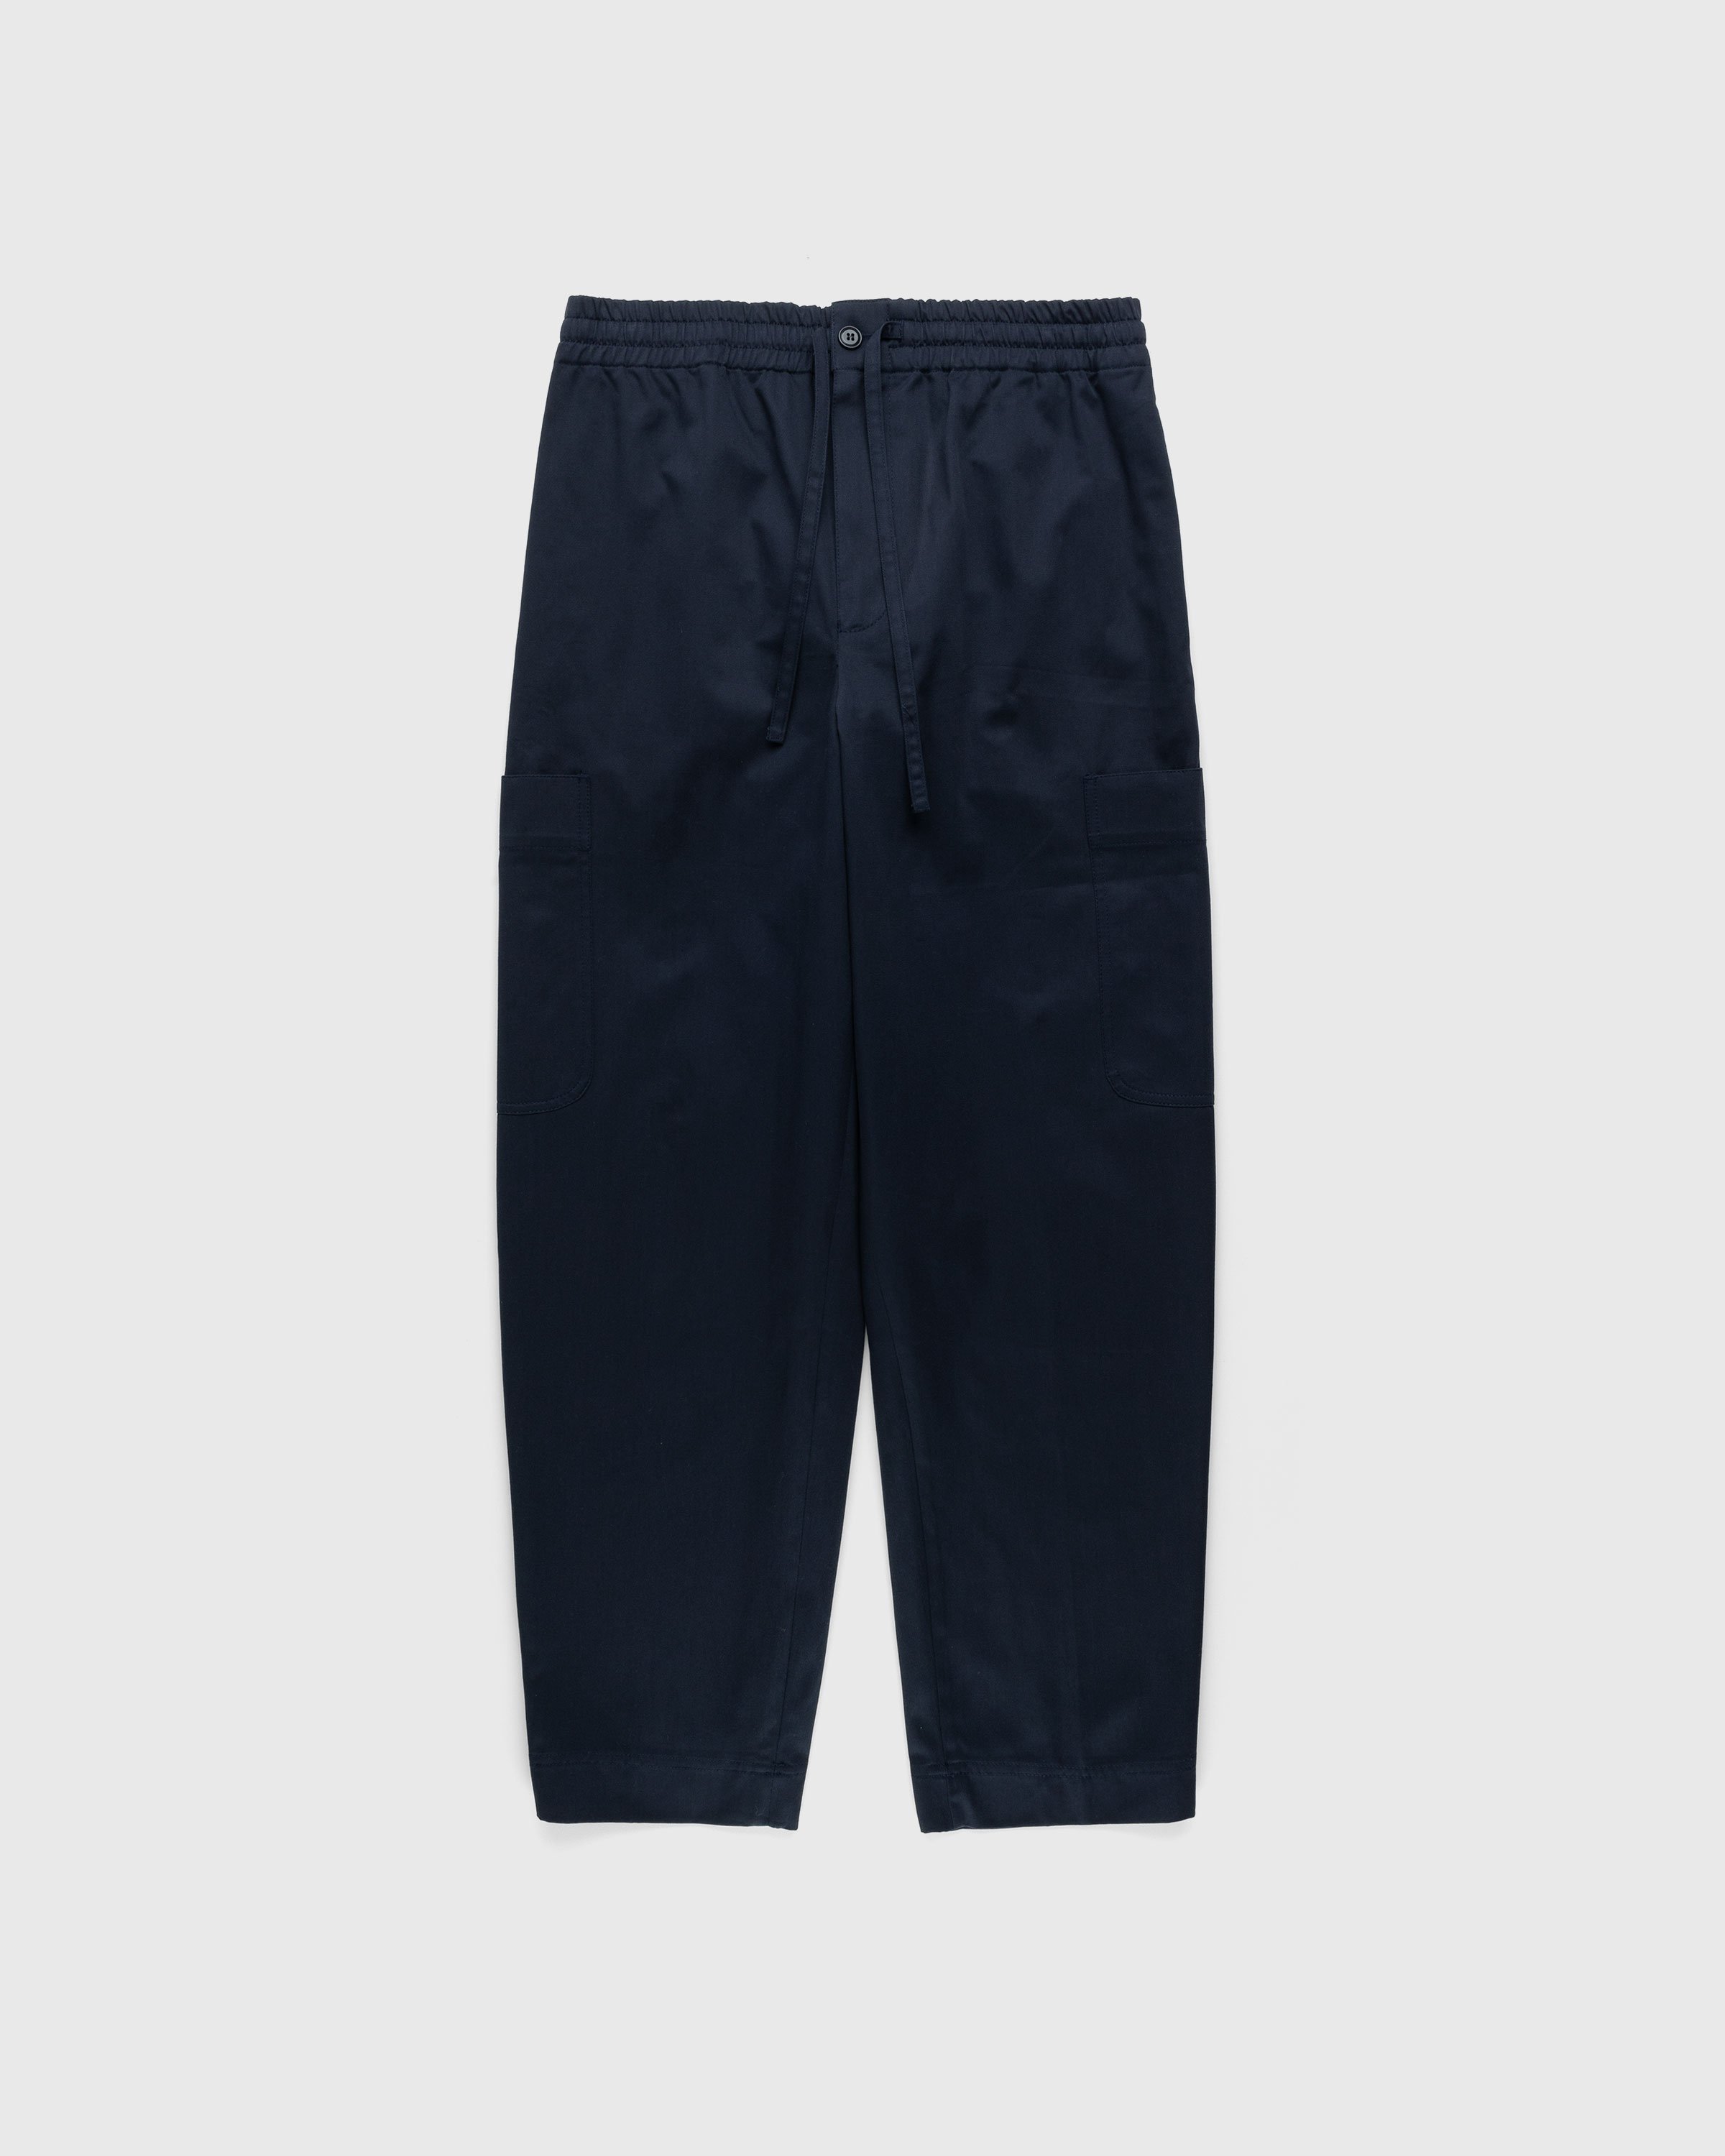 Kenzo - Cargo Trousers - Clothing - Blue - Image 1